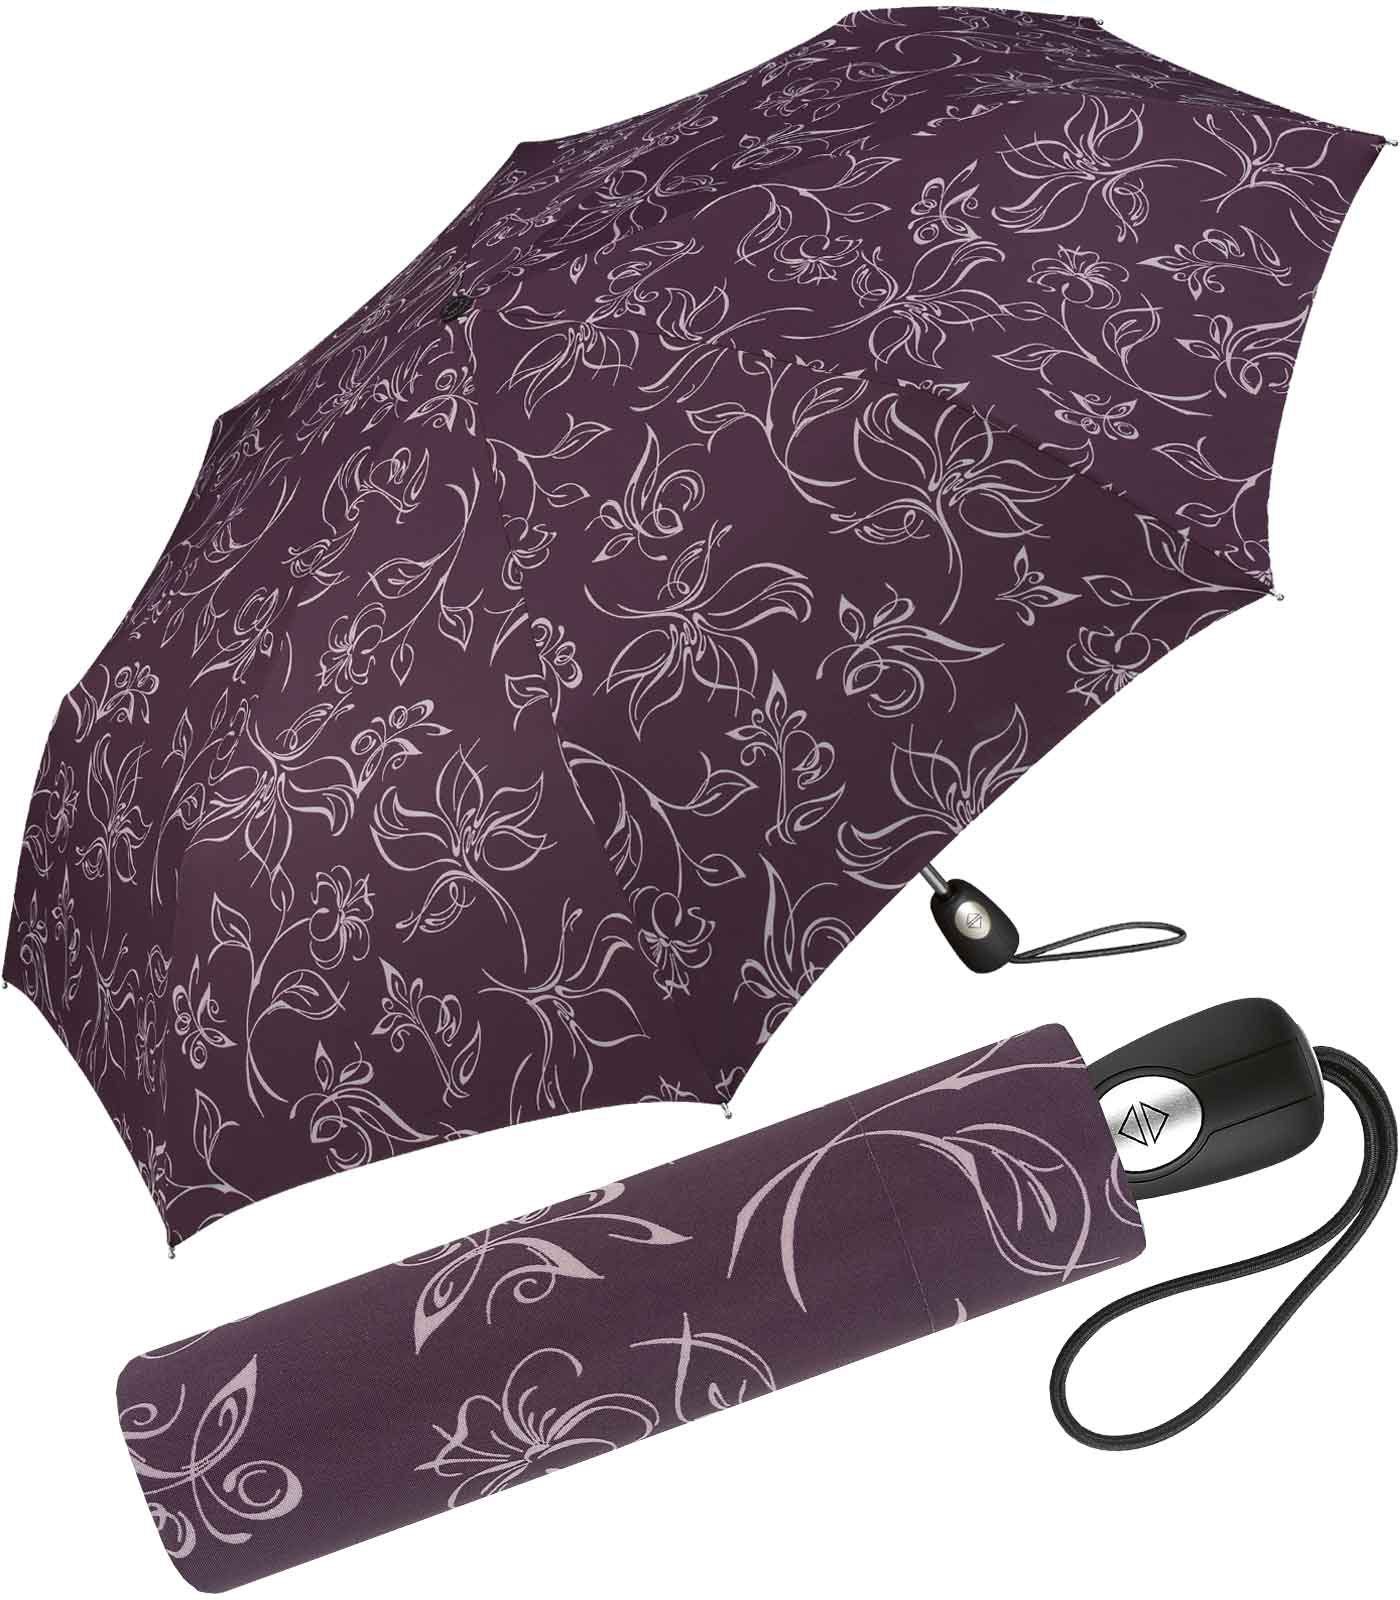 Pierre Cardin Taschenregenschirm schöner Damen-Regenschirm mit Auf-Zu-Automatik, mit wunderschönen Blumenskizzen weiß-bordeauxrot